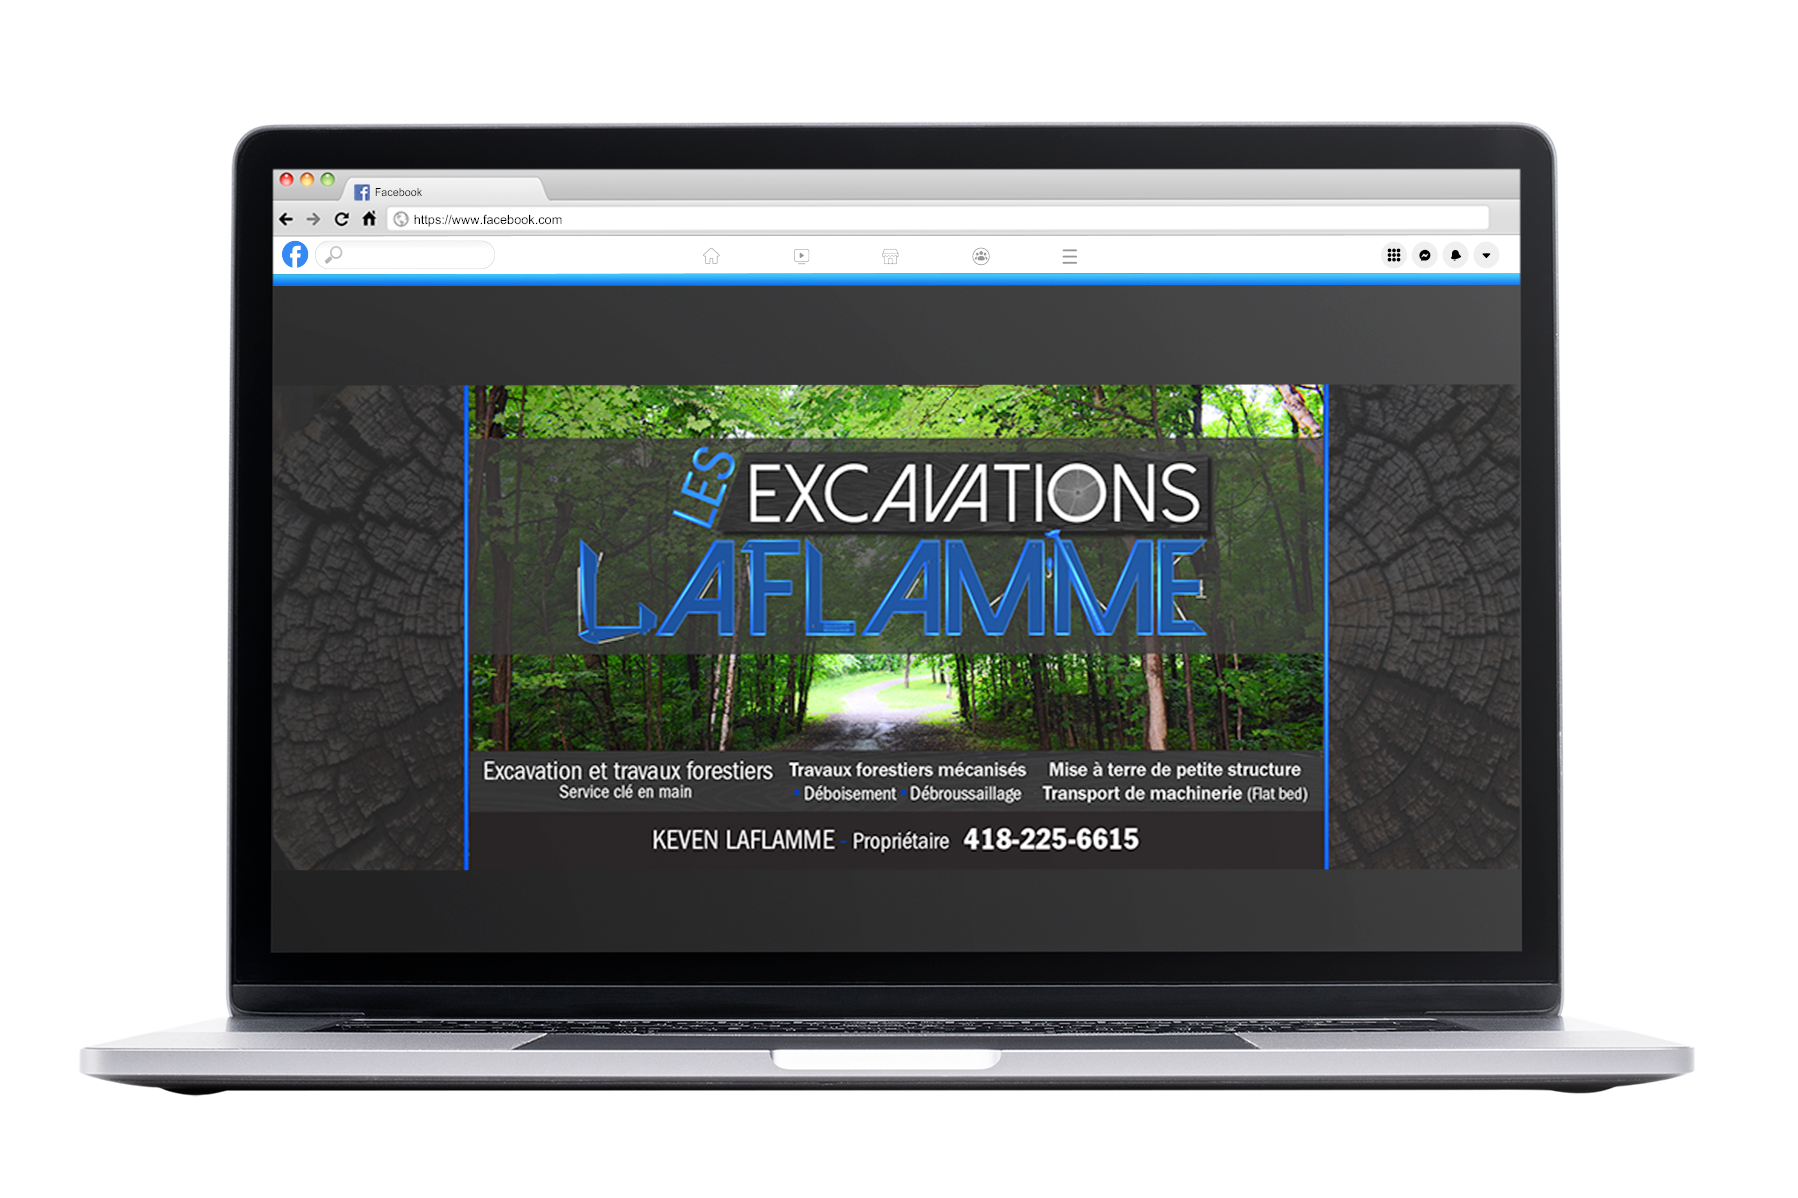 laptop_facebook-publication-excavation laflamme